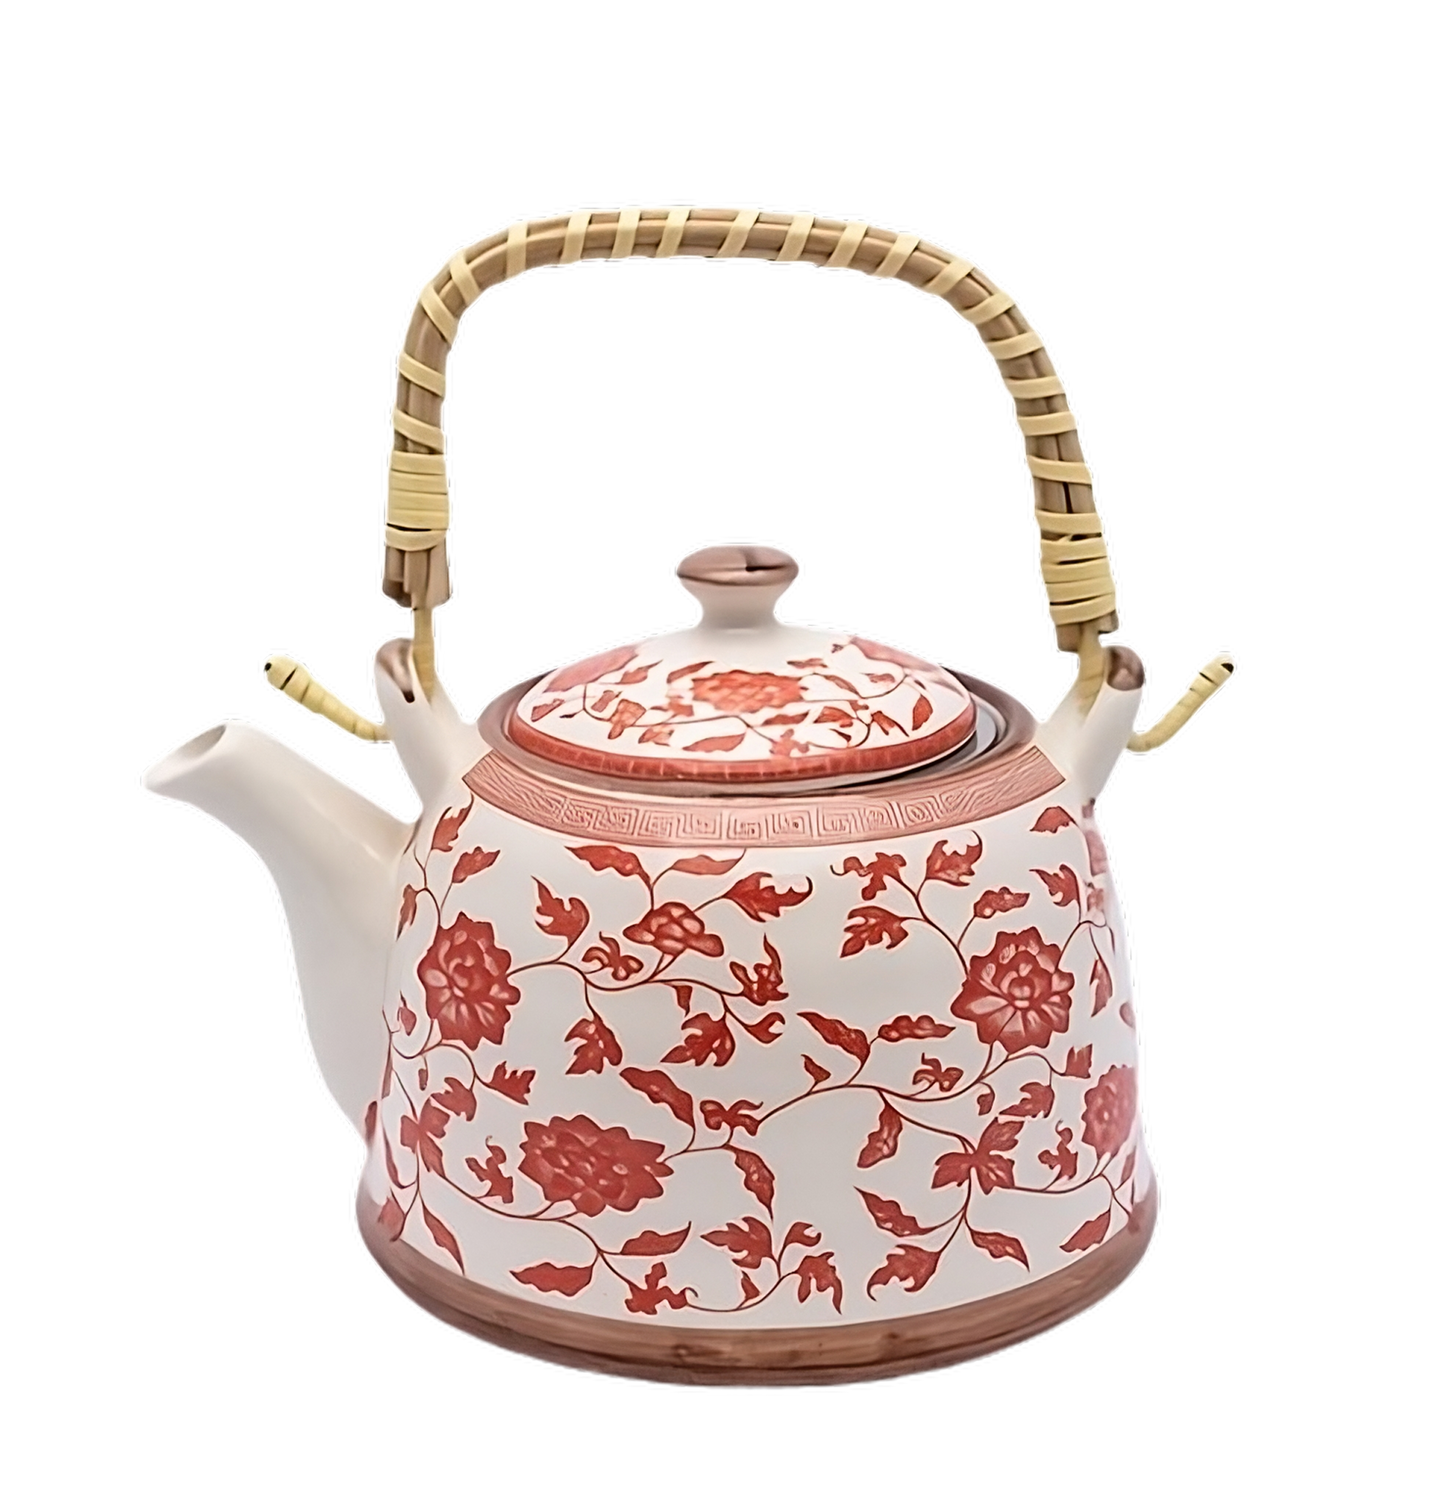 Ceramic Printed Teapot